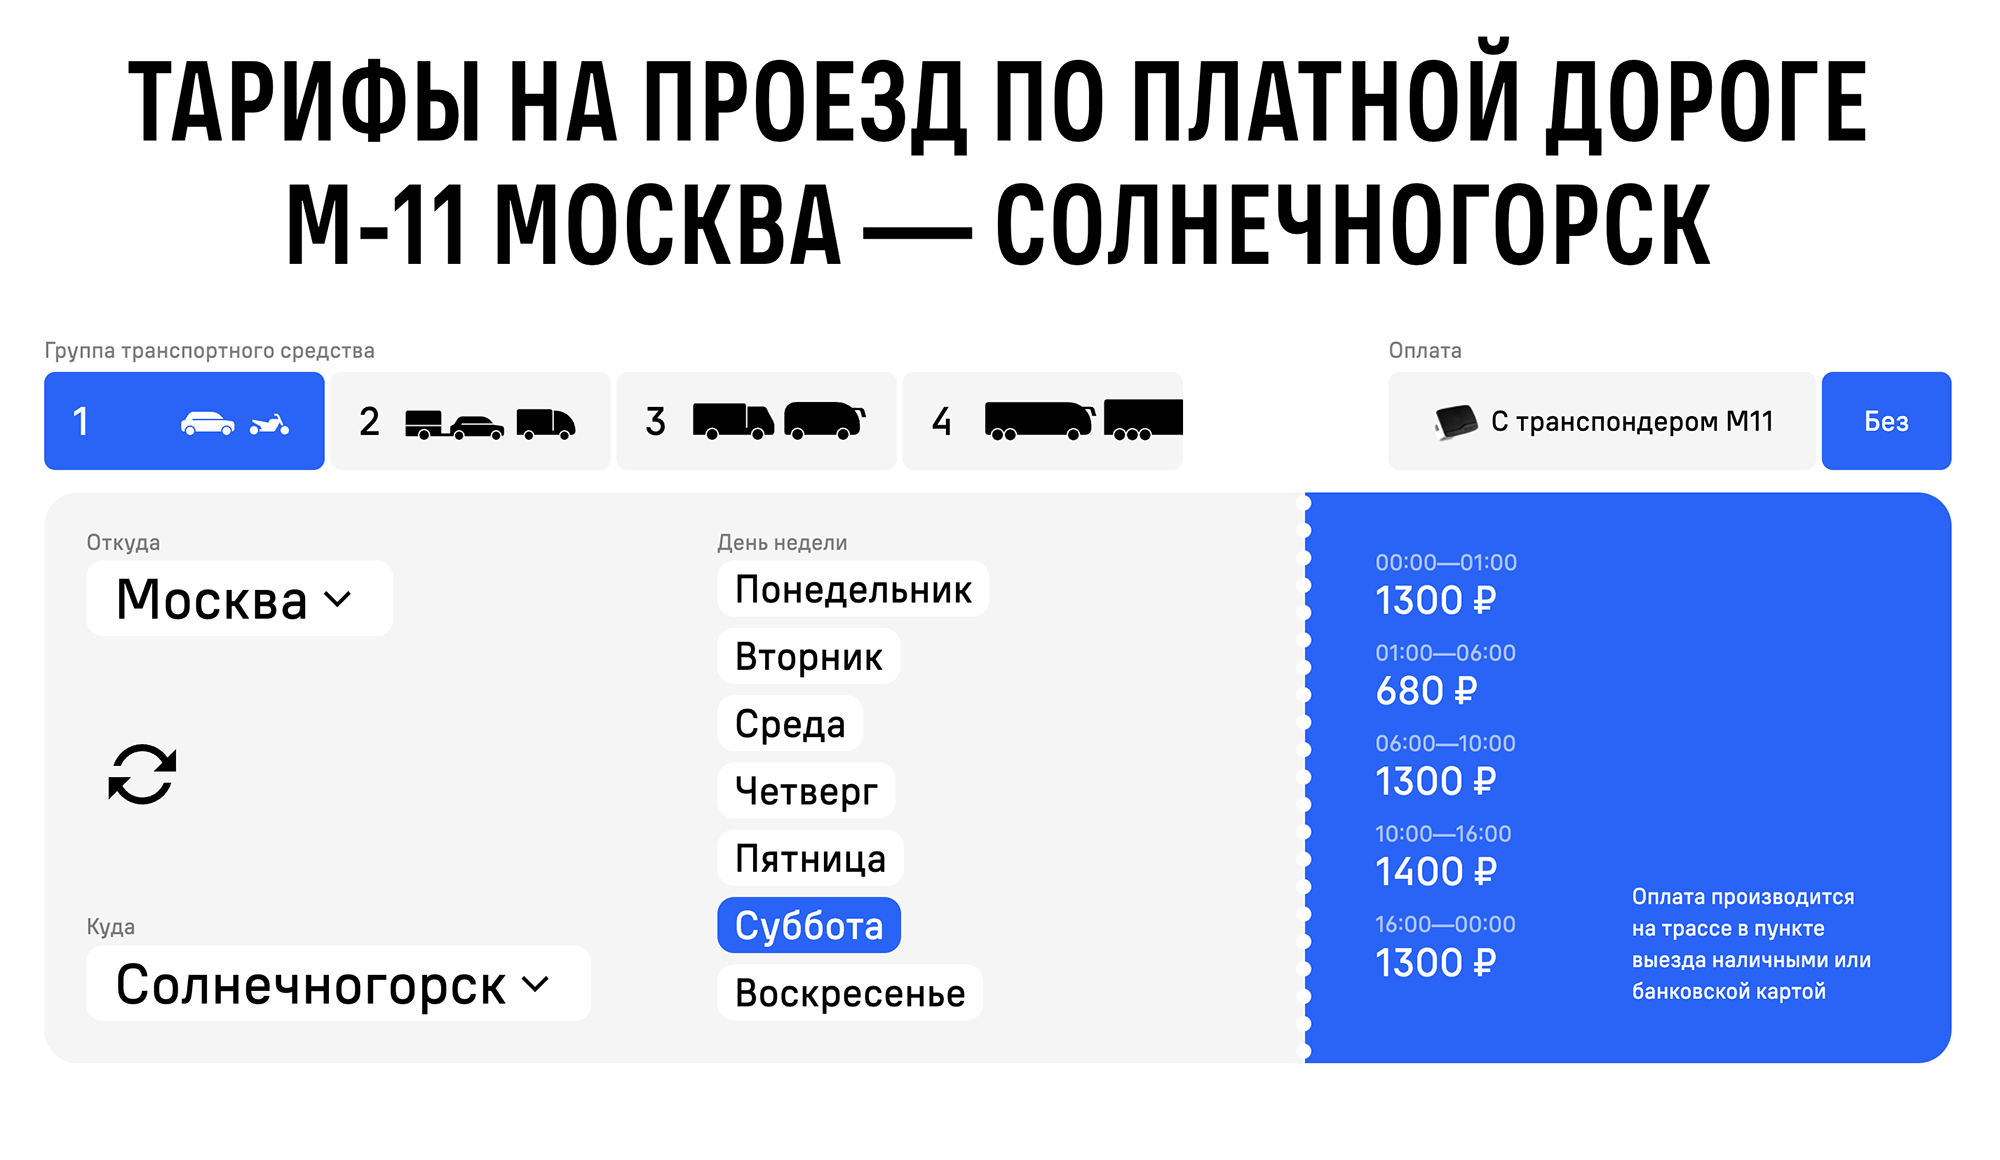 Если ехать без транспондера, проезд будет стоить 1400 ₽ в одну сторону. Источник: m11⁠-⁠neva.ru